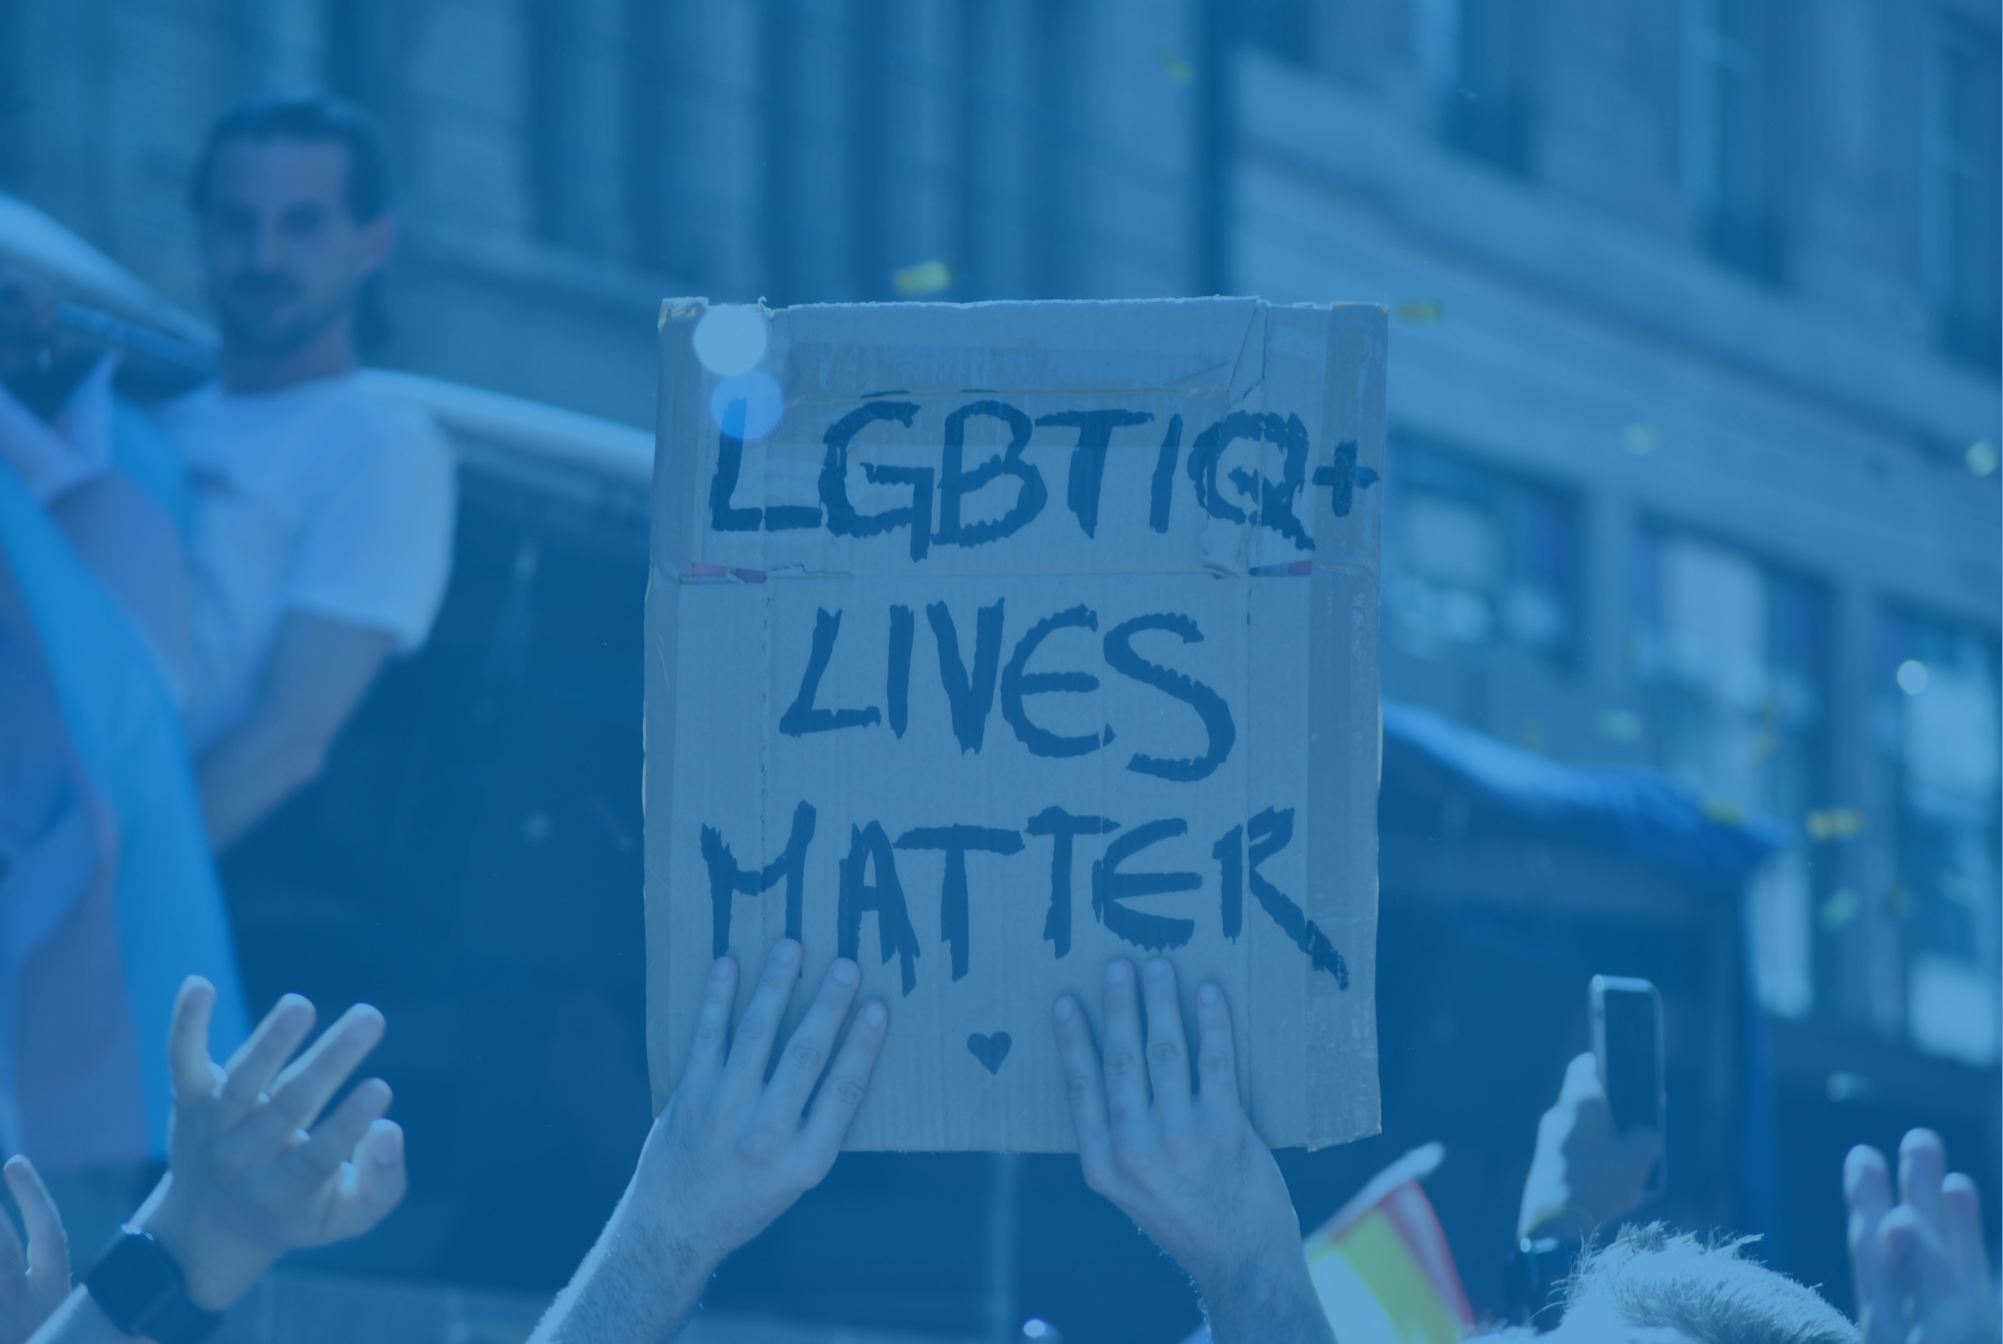 A imagem destaca uma placa, segurada por uma pessoa no meio de uma manifetação. Na placa, está escrito "LGBTIQ+ lives matter", que significa "Vidas LGBTIQ+ importam"